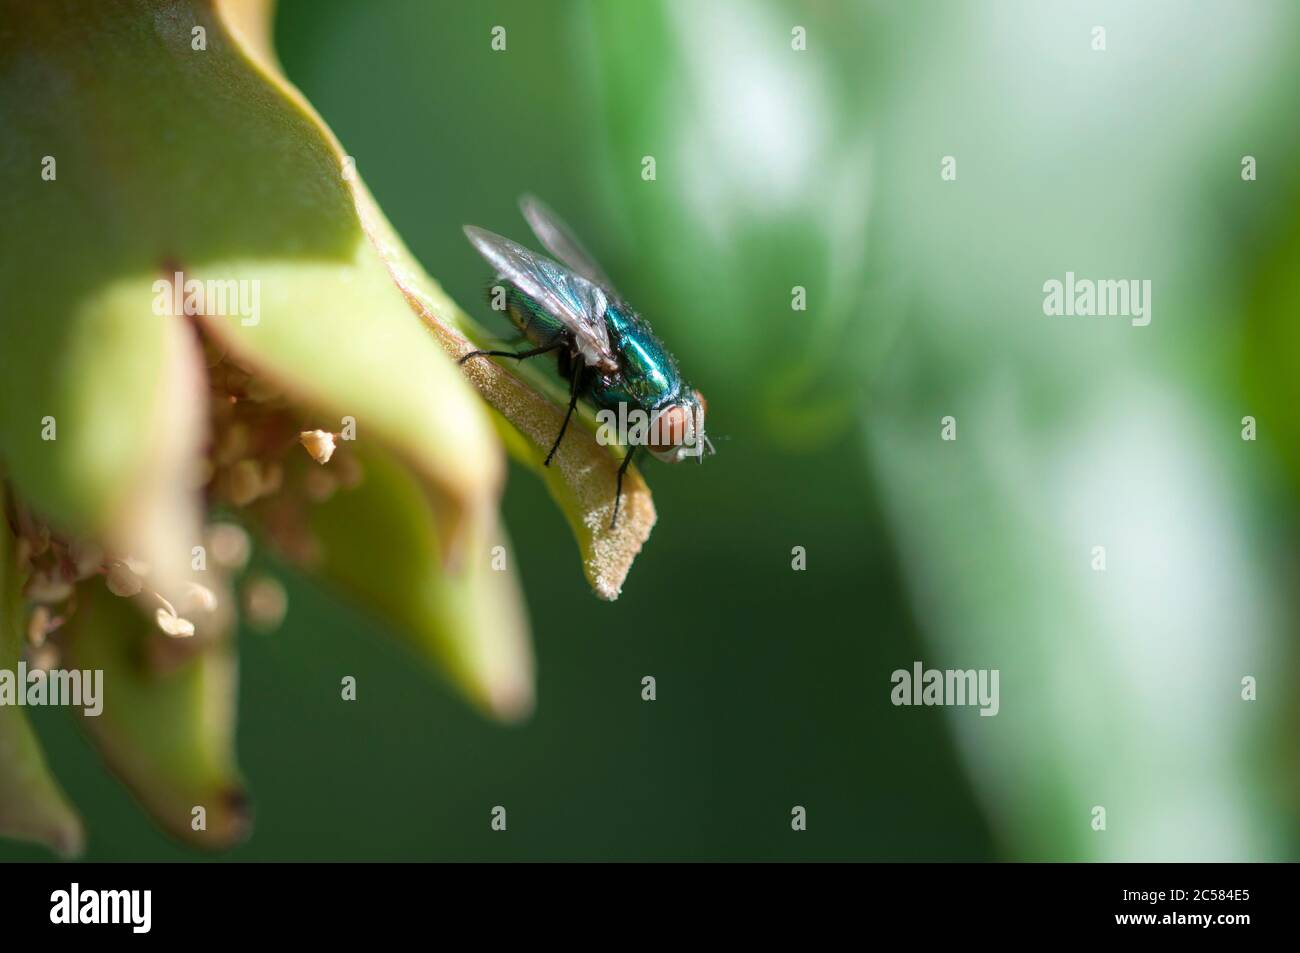 Grüne Fliege auf einem grünen Granatapfel sitzend. Eine Fliege, die auf einem nicht-reifen Granatapfel ruht. Makroaufnahmen einer Fliege. Stockfoto